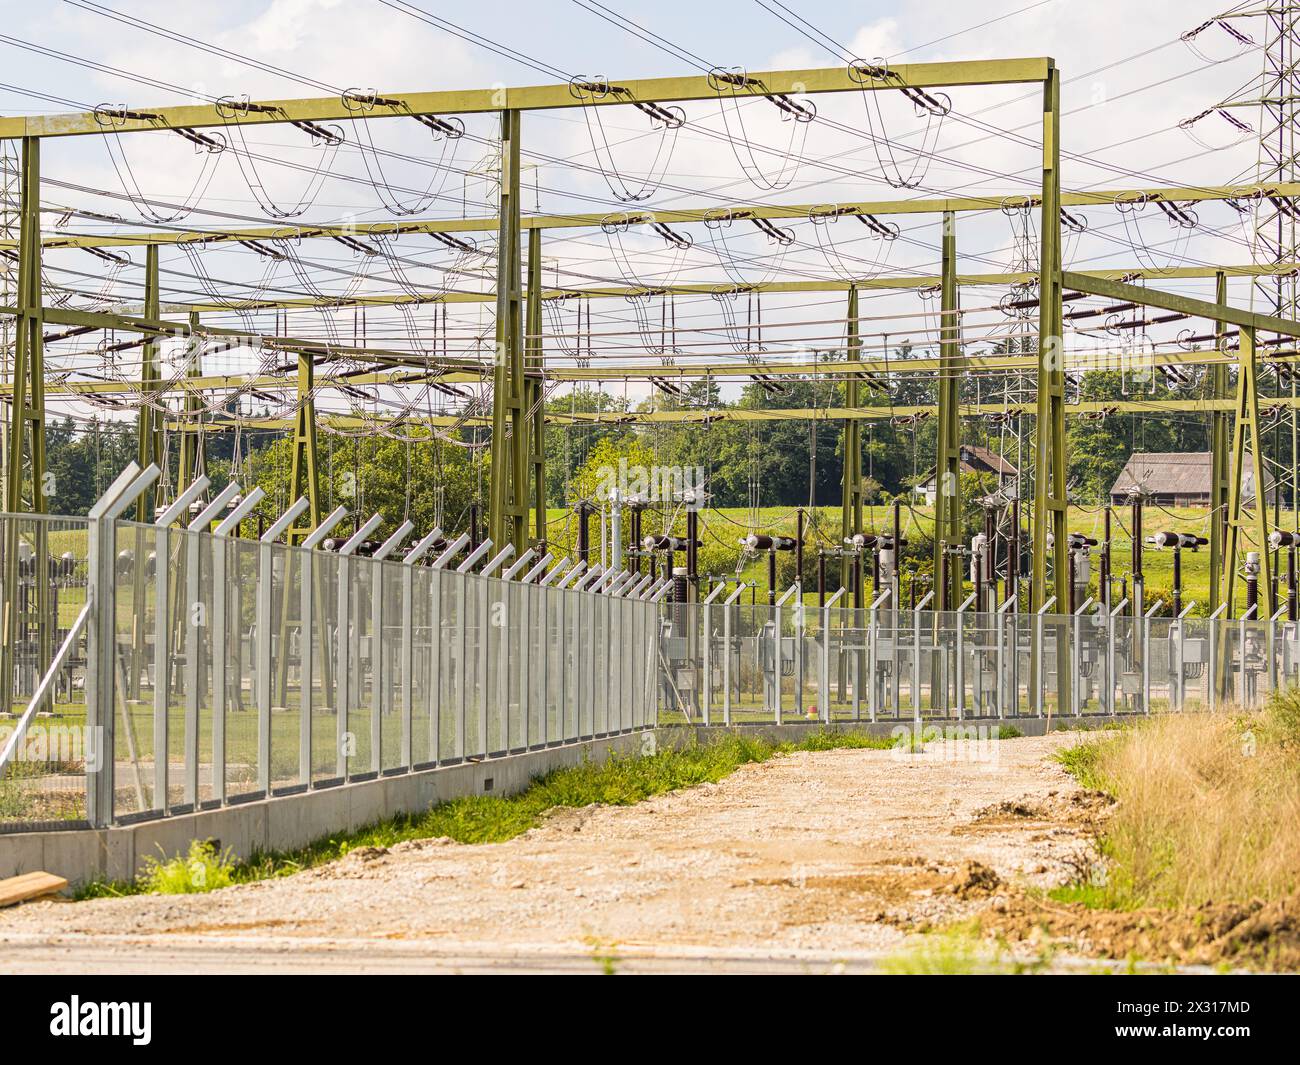 Wenige Wochen vor einer möglichen Strommangellage in der Schweiz, wird beim Umspannwerk Brütten der Sicherheitszaun erneuert und massiv verstärkt. (BR Foto Stock